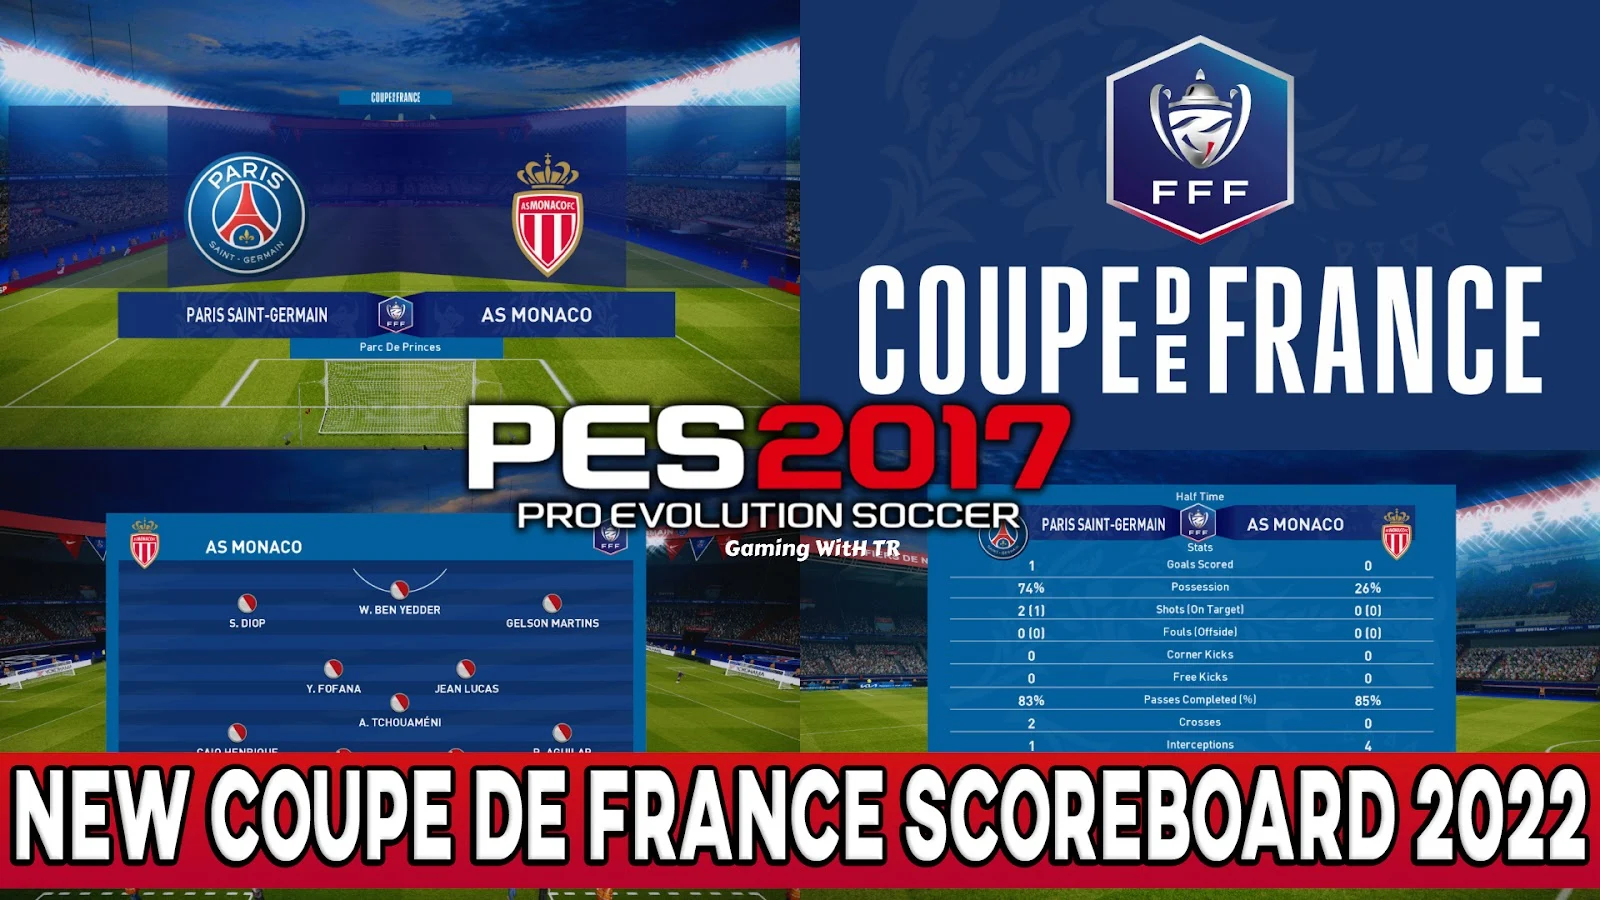 PES 2017 | New Coupe de France Scoreboard Season 2022